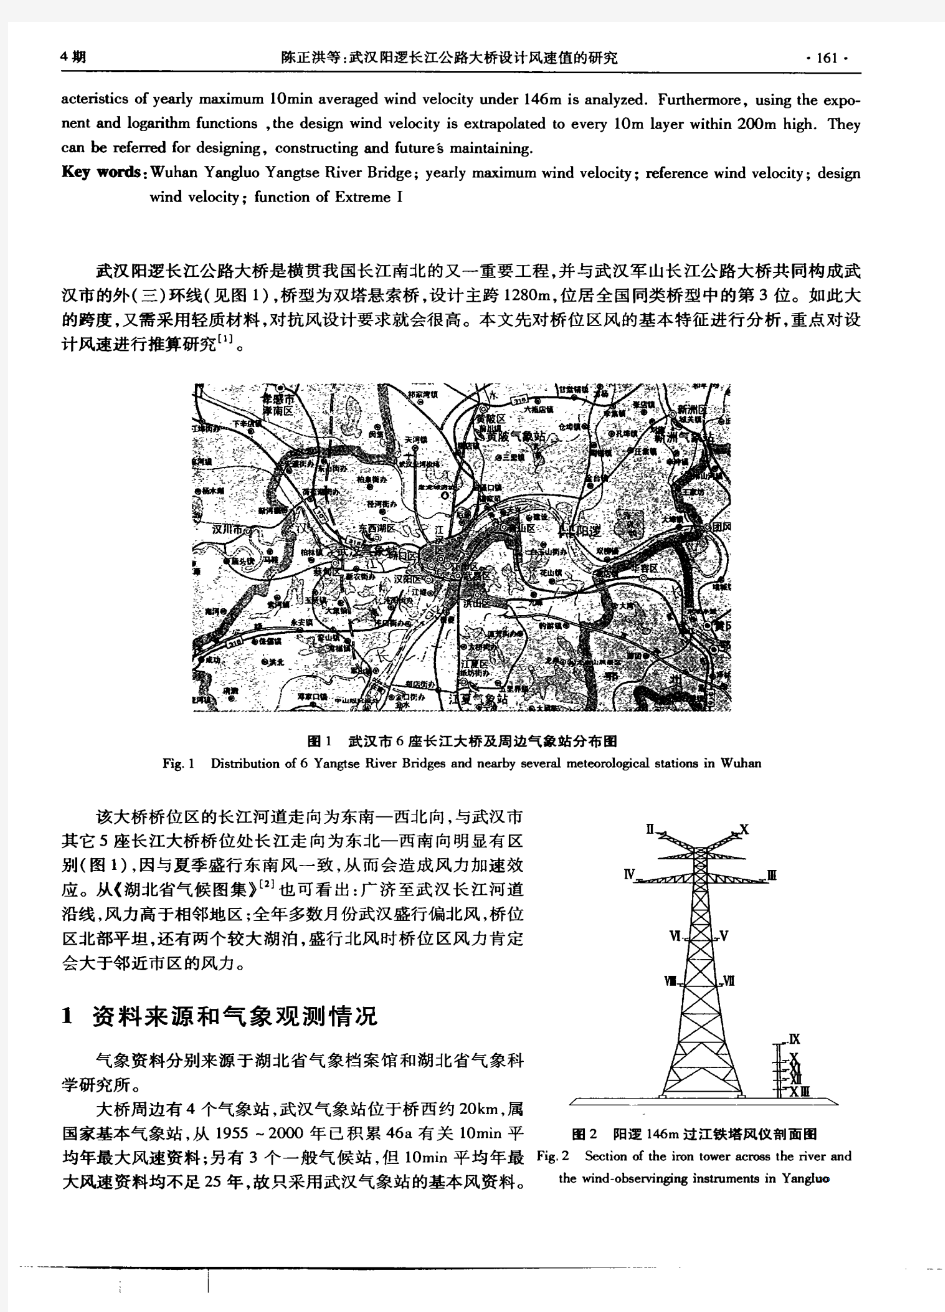 武汉长江大桥设计风速值的研究